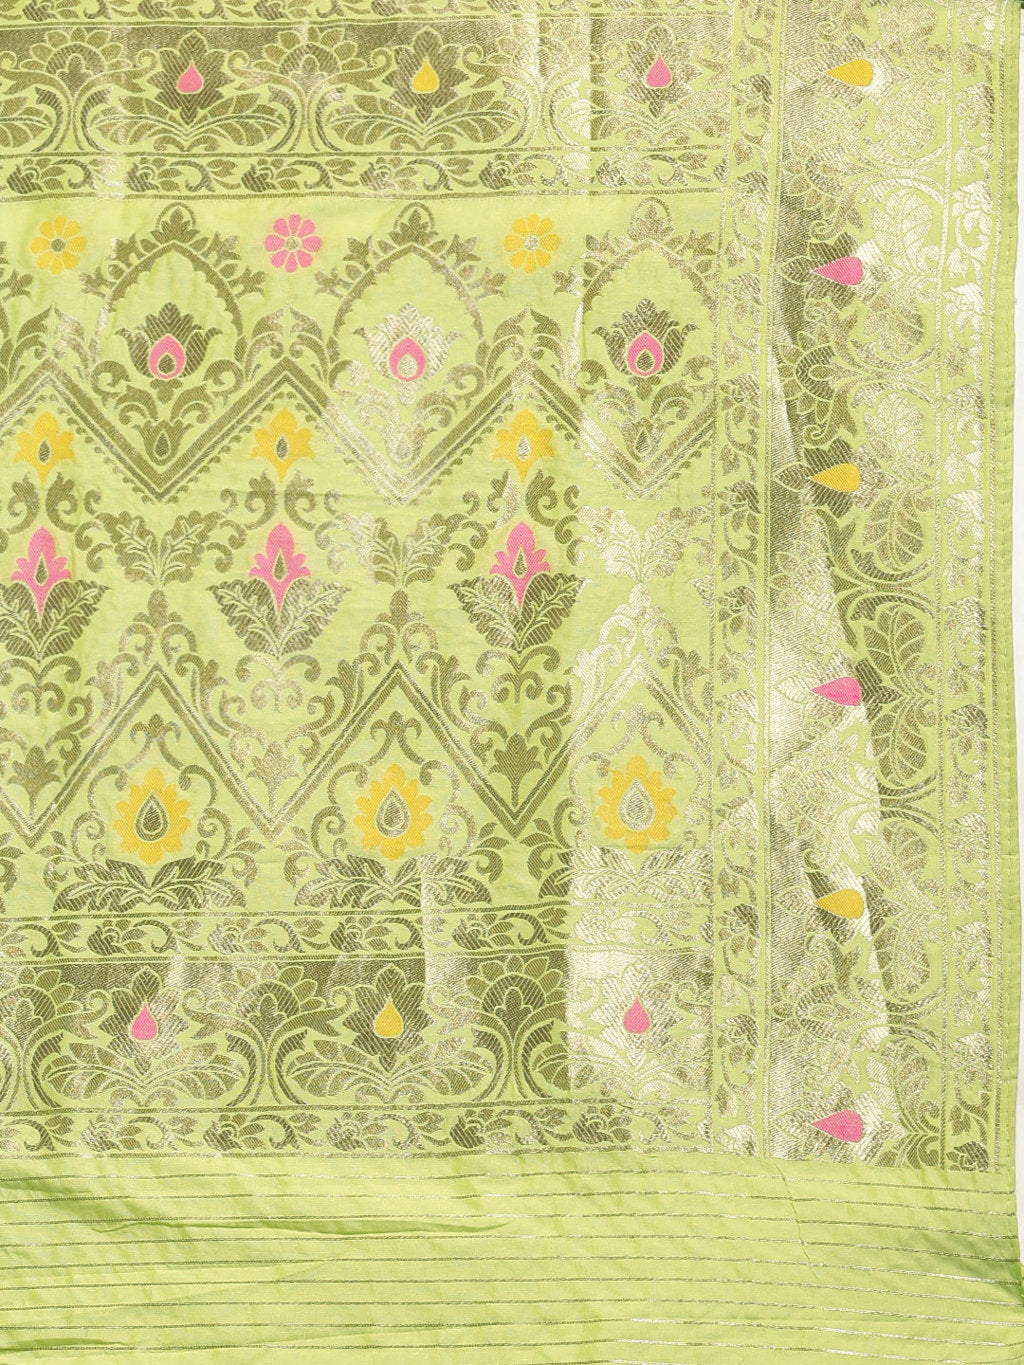 Women's Parrot Green Jacquard Silk Jacquard Work Traditional Saree - Sangam Prints